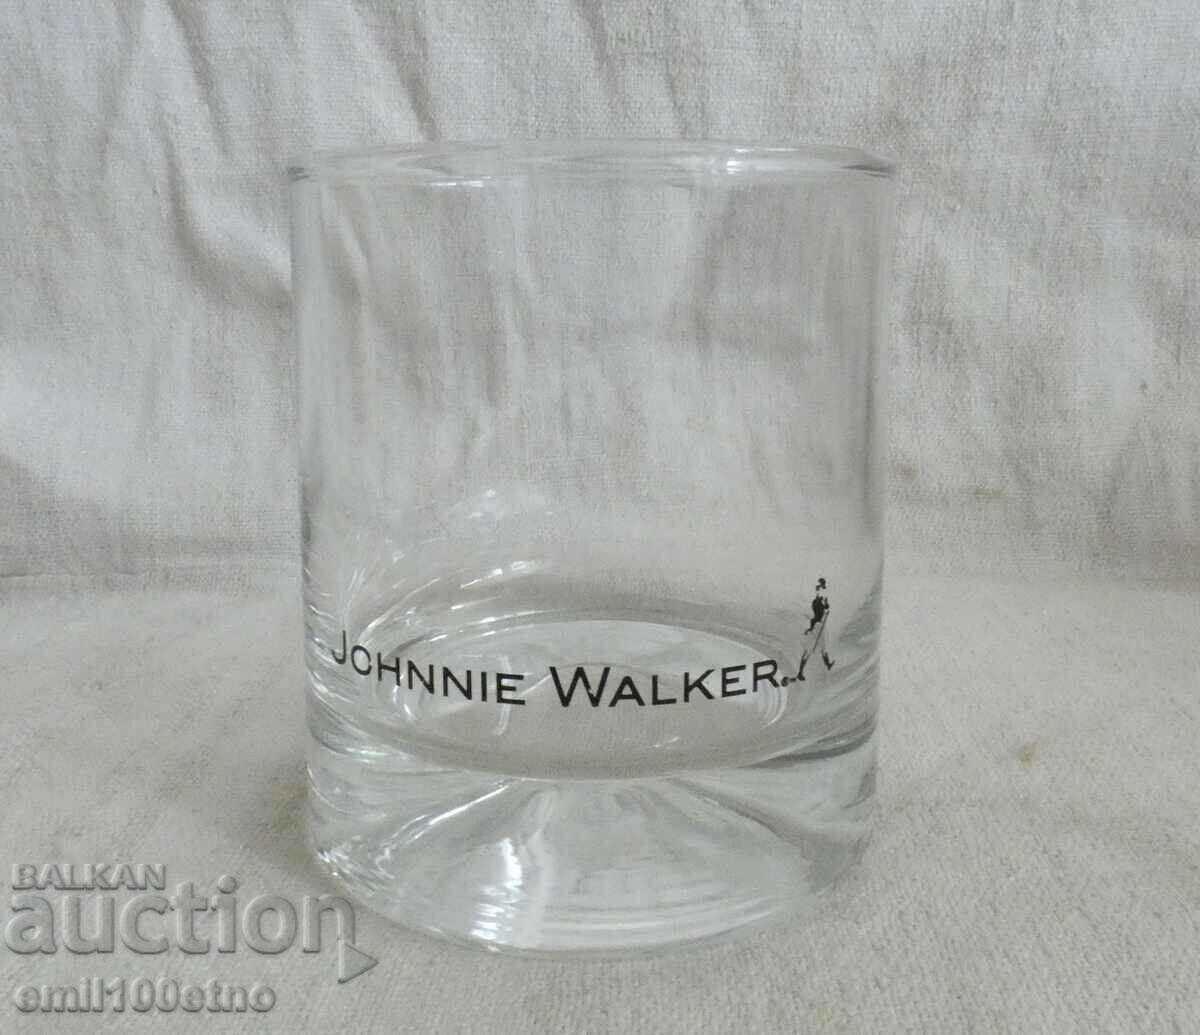 Johnnie Walker Scotch Whiskey Glass